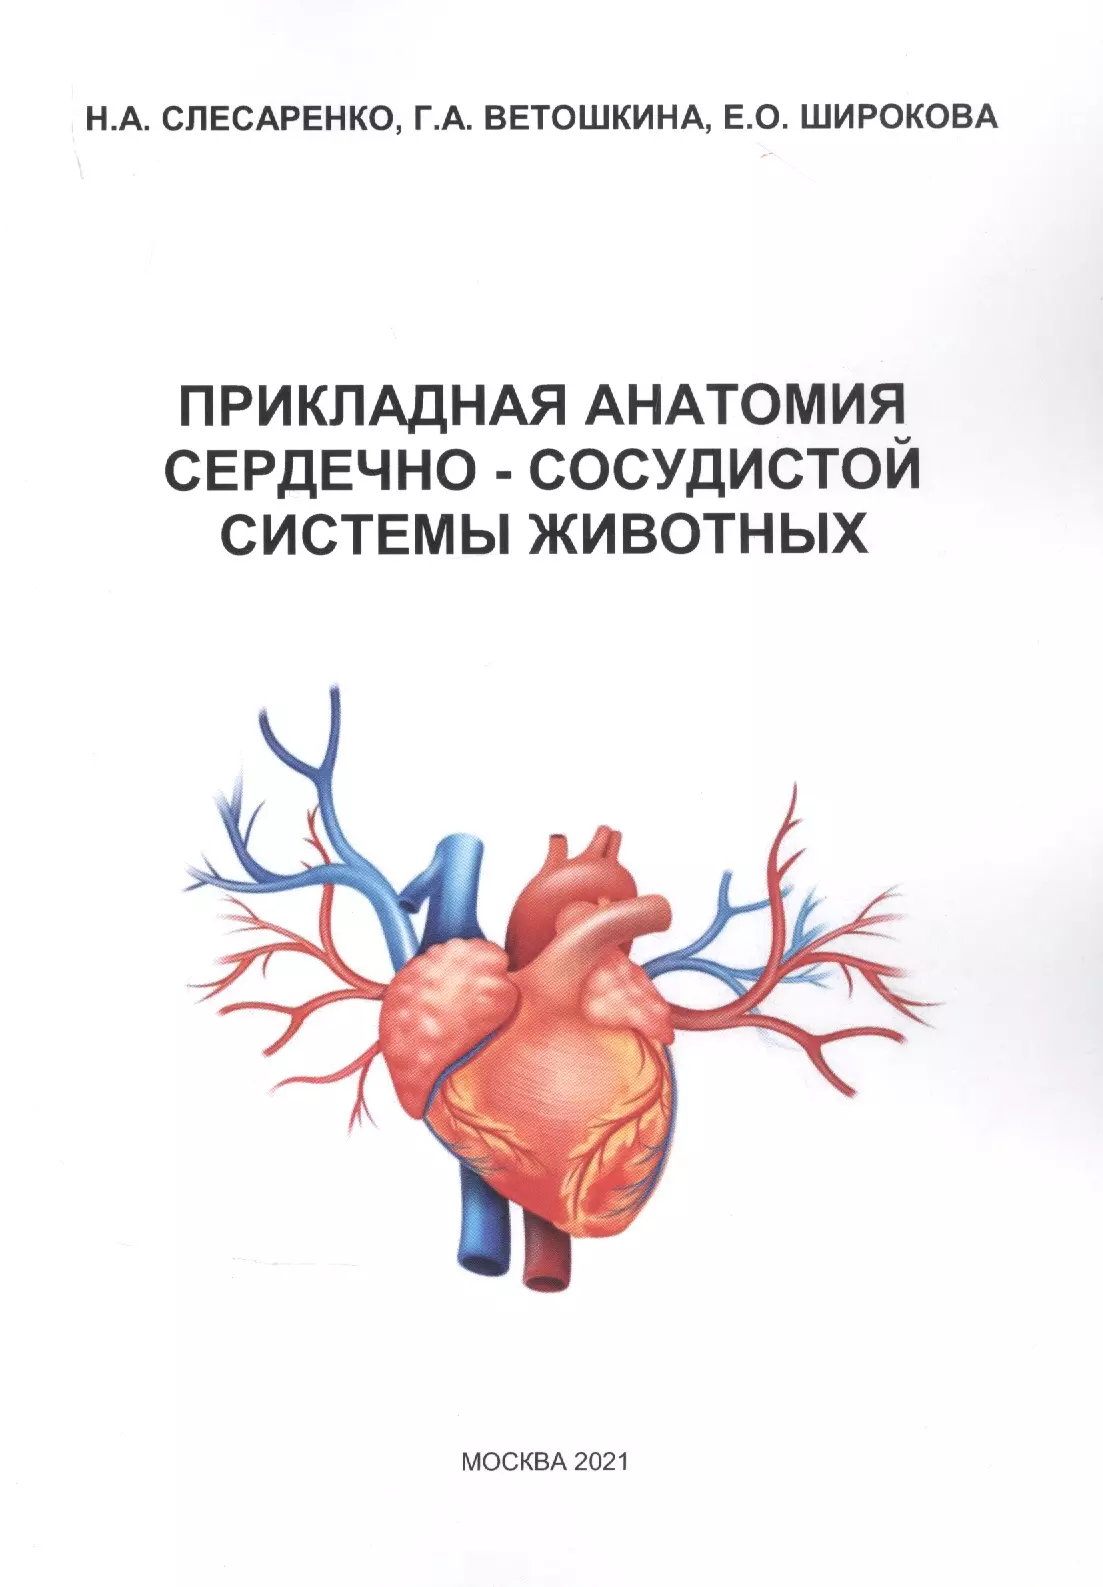 ника кардиотон защита сердечно сосудистой системы 30 капсул Прикладная анатомия сердечно-сосудистой системы животных